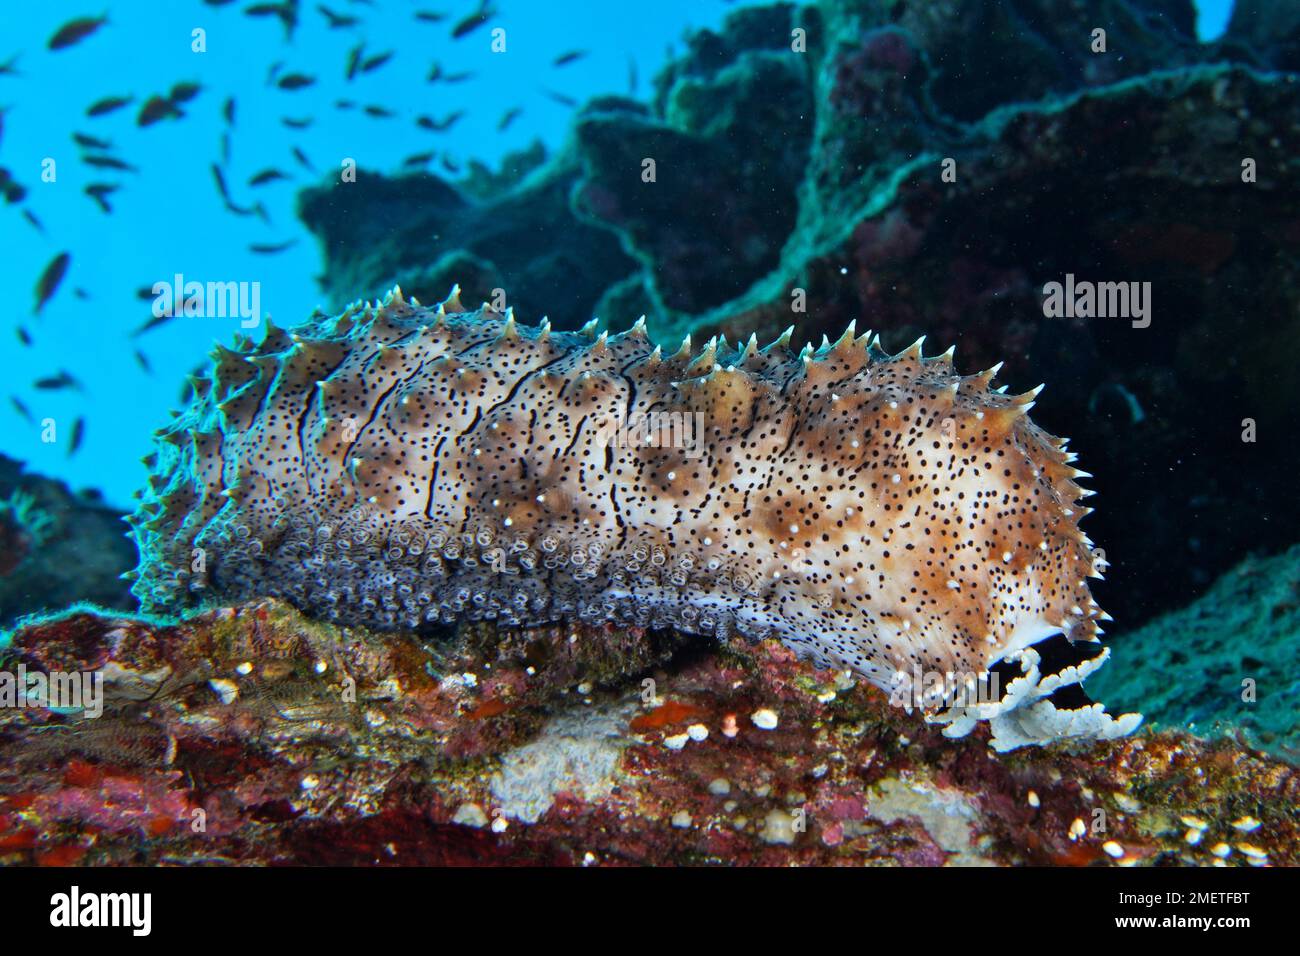 Cetriolo marino Graeffes (Pearsonothuria graeffei), sito di immersione della barriera corallina di Daedalus, Egitto, Mar Rosso Foto Stock